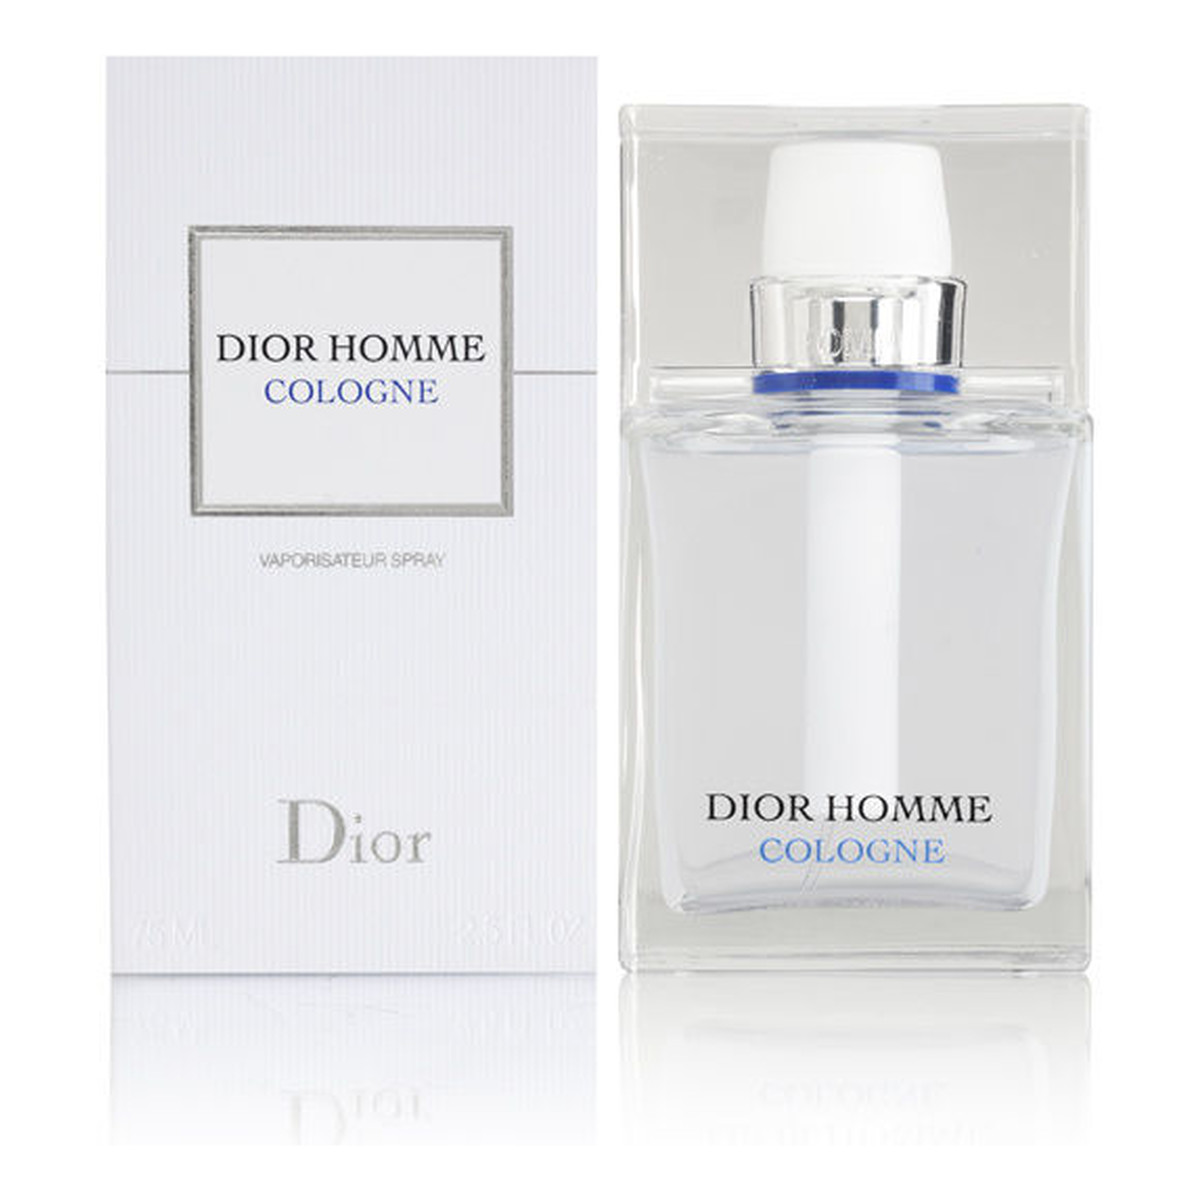 Dior Homme Cologne woda kolońska 75ml